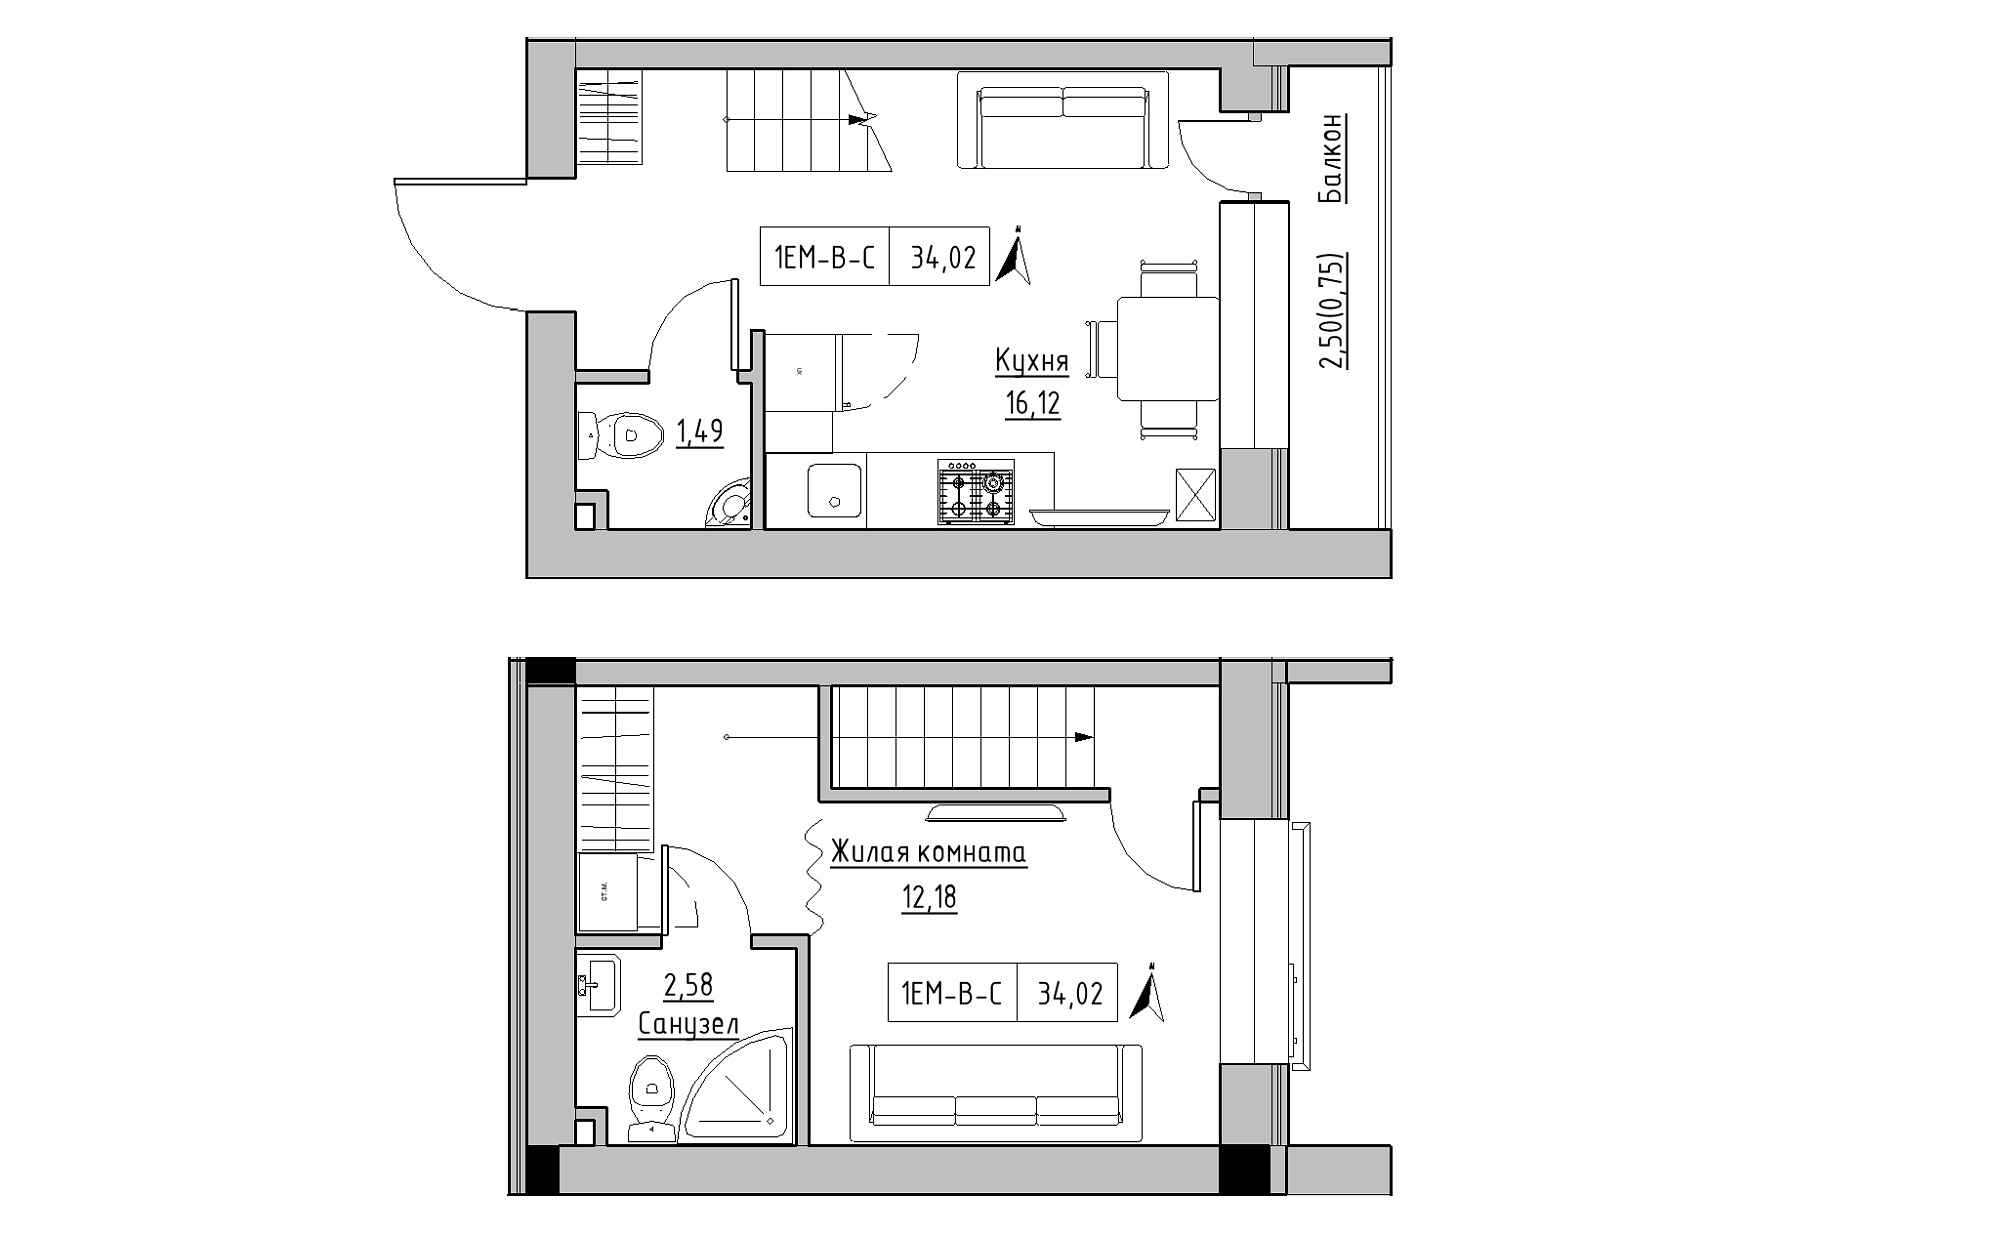 Planning 2-lvl flats area 34.02m2, KS-023-05/0007.